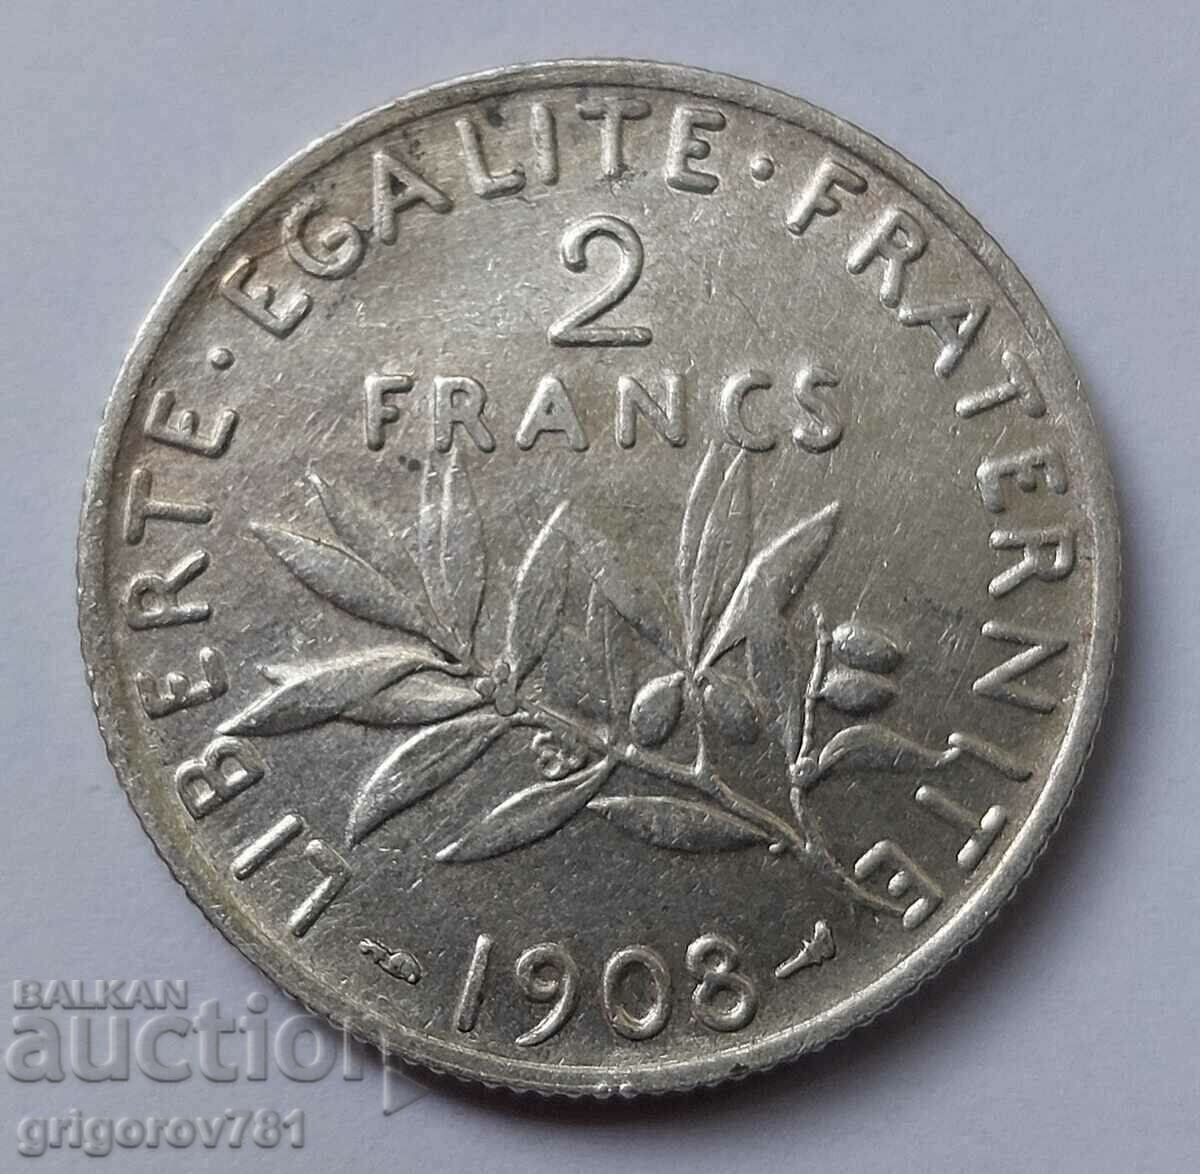 2 Franci Argint Franta 1908 - Moneda de argint #35